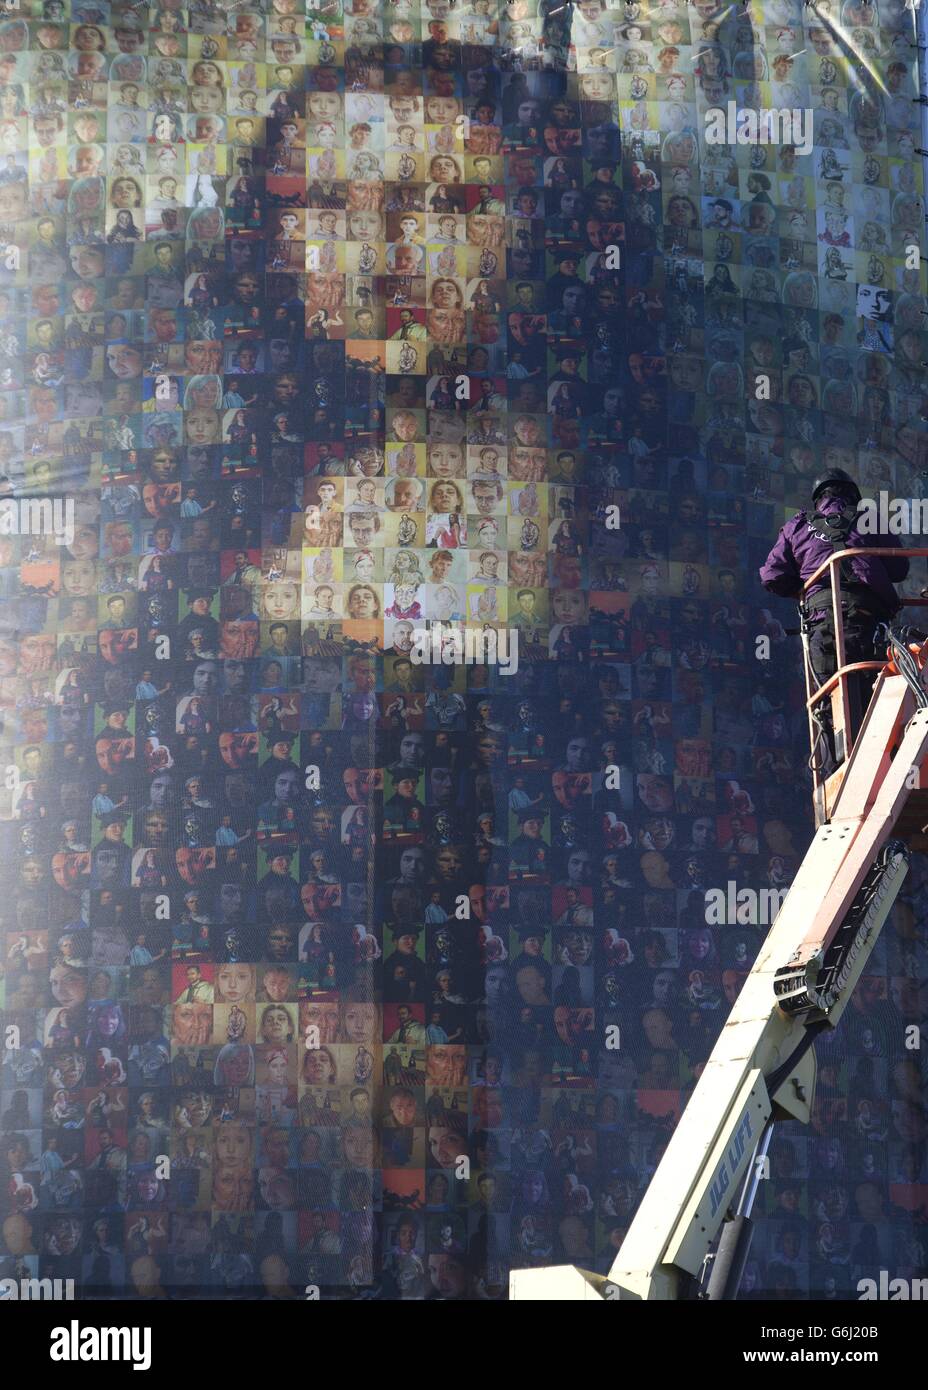 : EINE 14 Meter hohe Staffelei mit einer fünf Meter x sieben Meter großen Leinwand der Mona Lisa, die aus 83 individuellen Selbstporträts von den Teilnehmern der Shortlist entstand, wird auf Clapham Common in Süd-London gezeigt, um den Start des Sky Arts' Portrait Artist of the Year Wettbewerbs zu markieren. Stockfoto